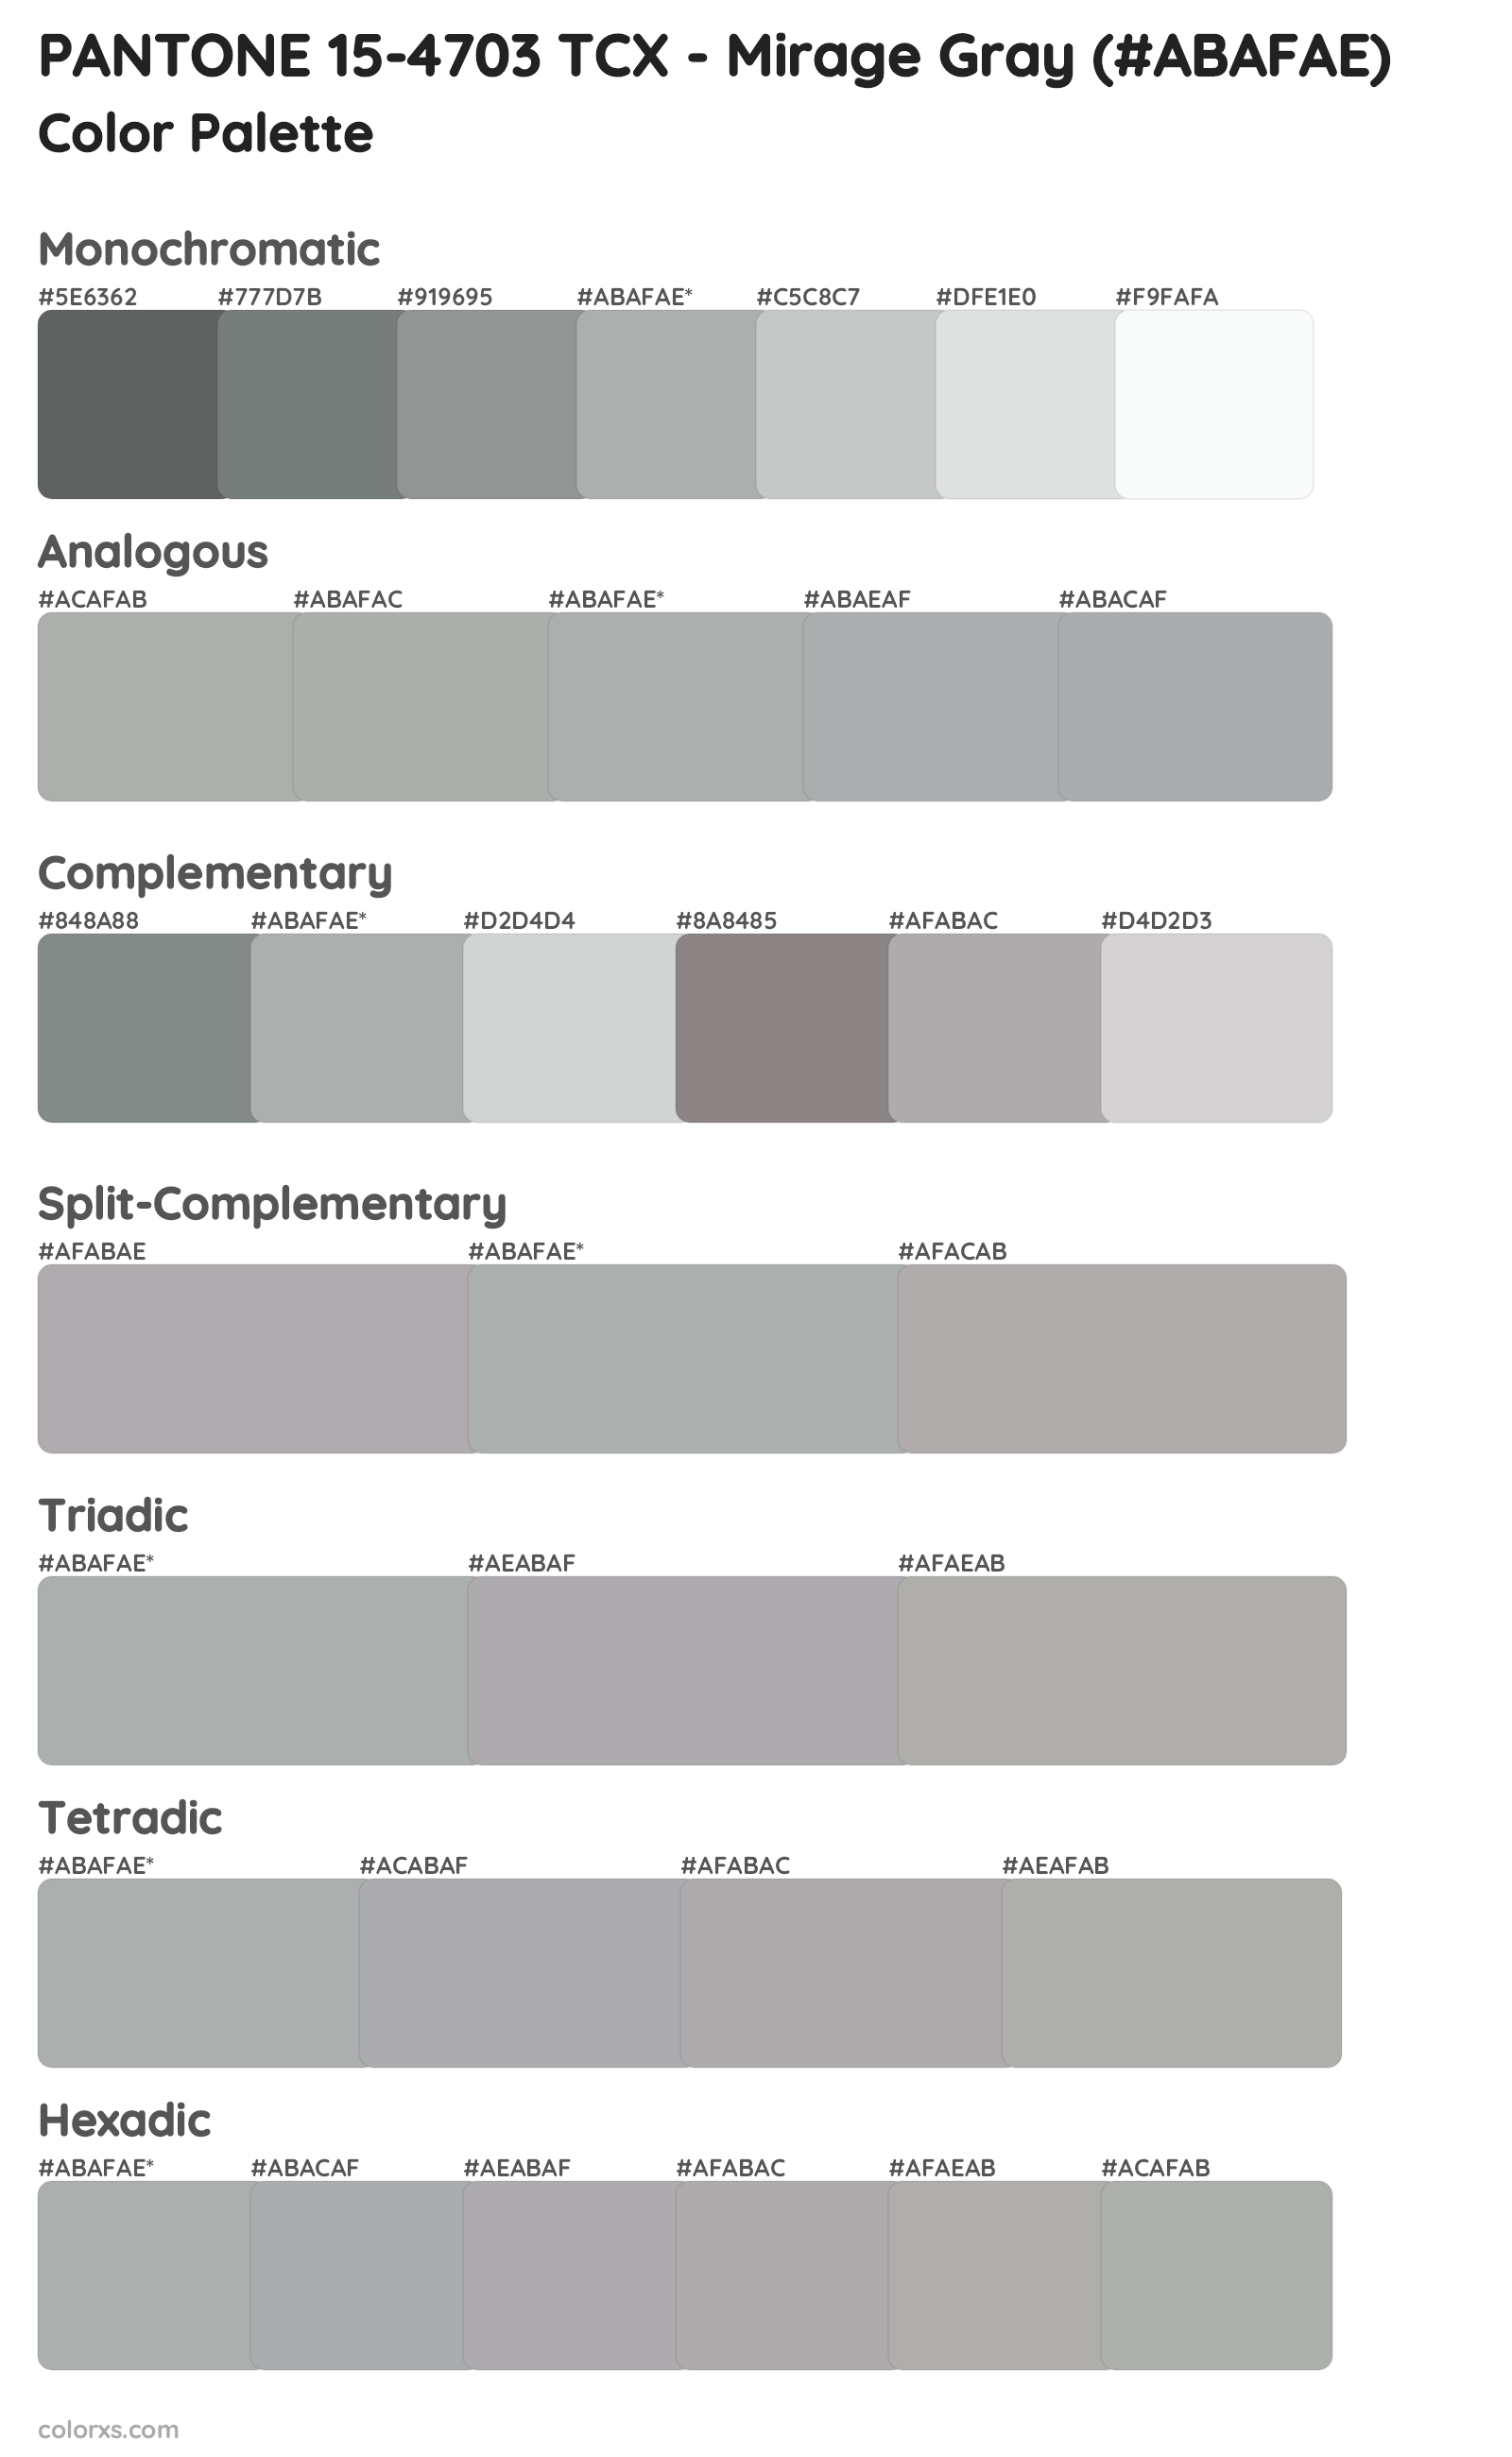 PANTONE 15-4703 TCX - Mirage Gray Color Scheme Palettes